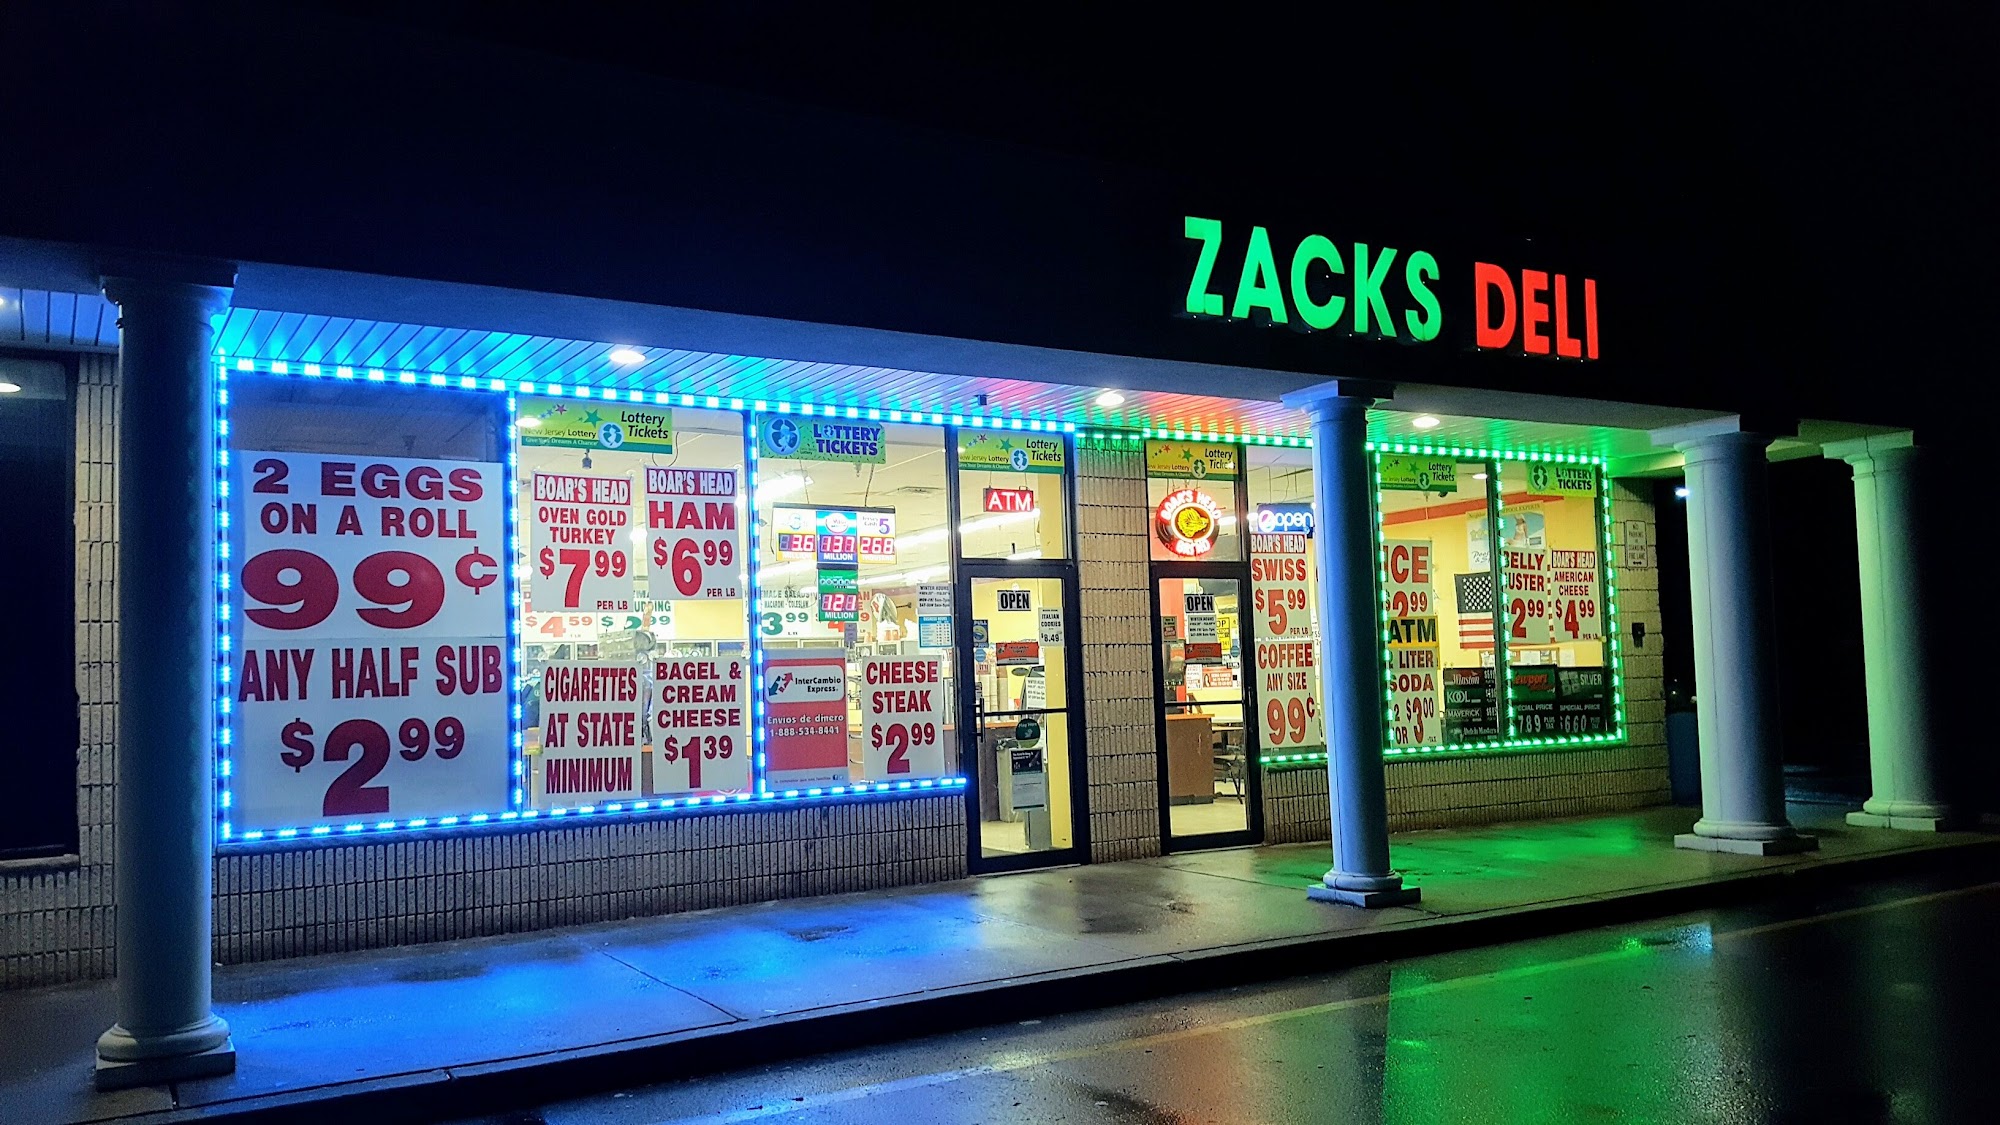 Zack's Deli